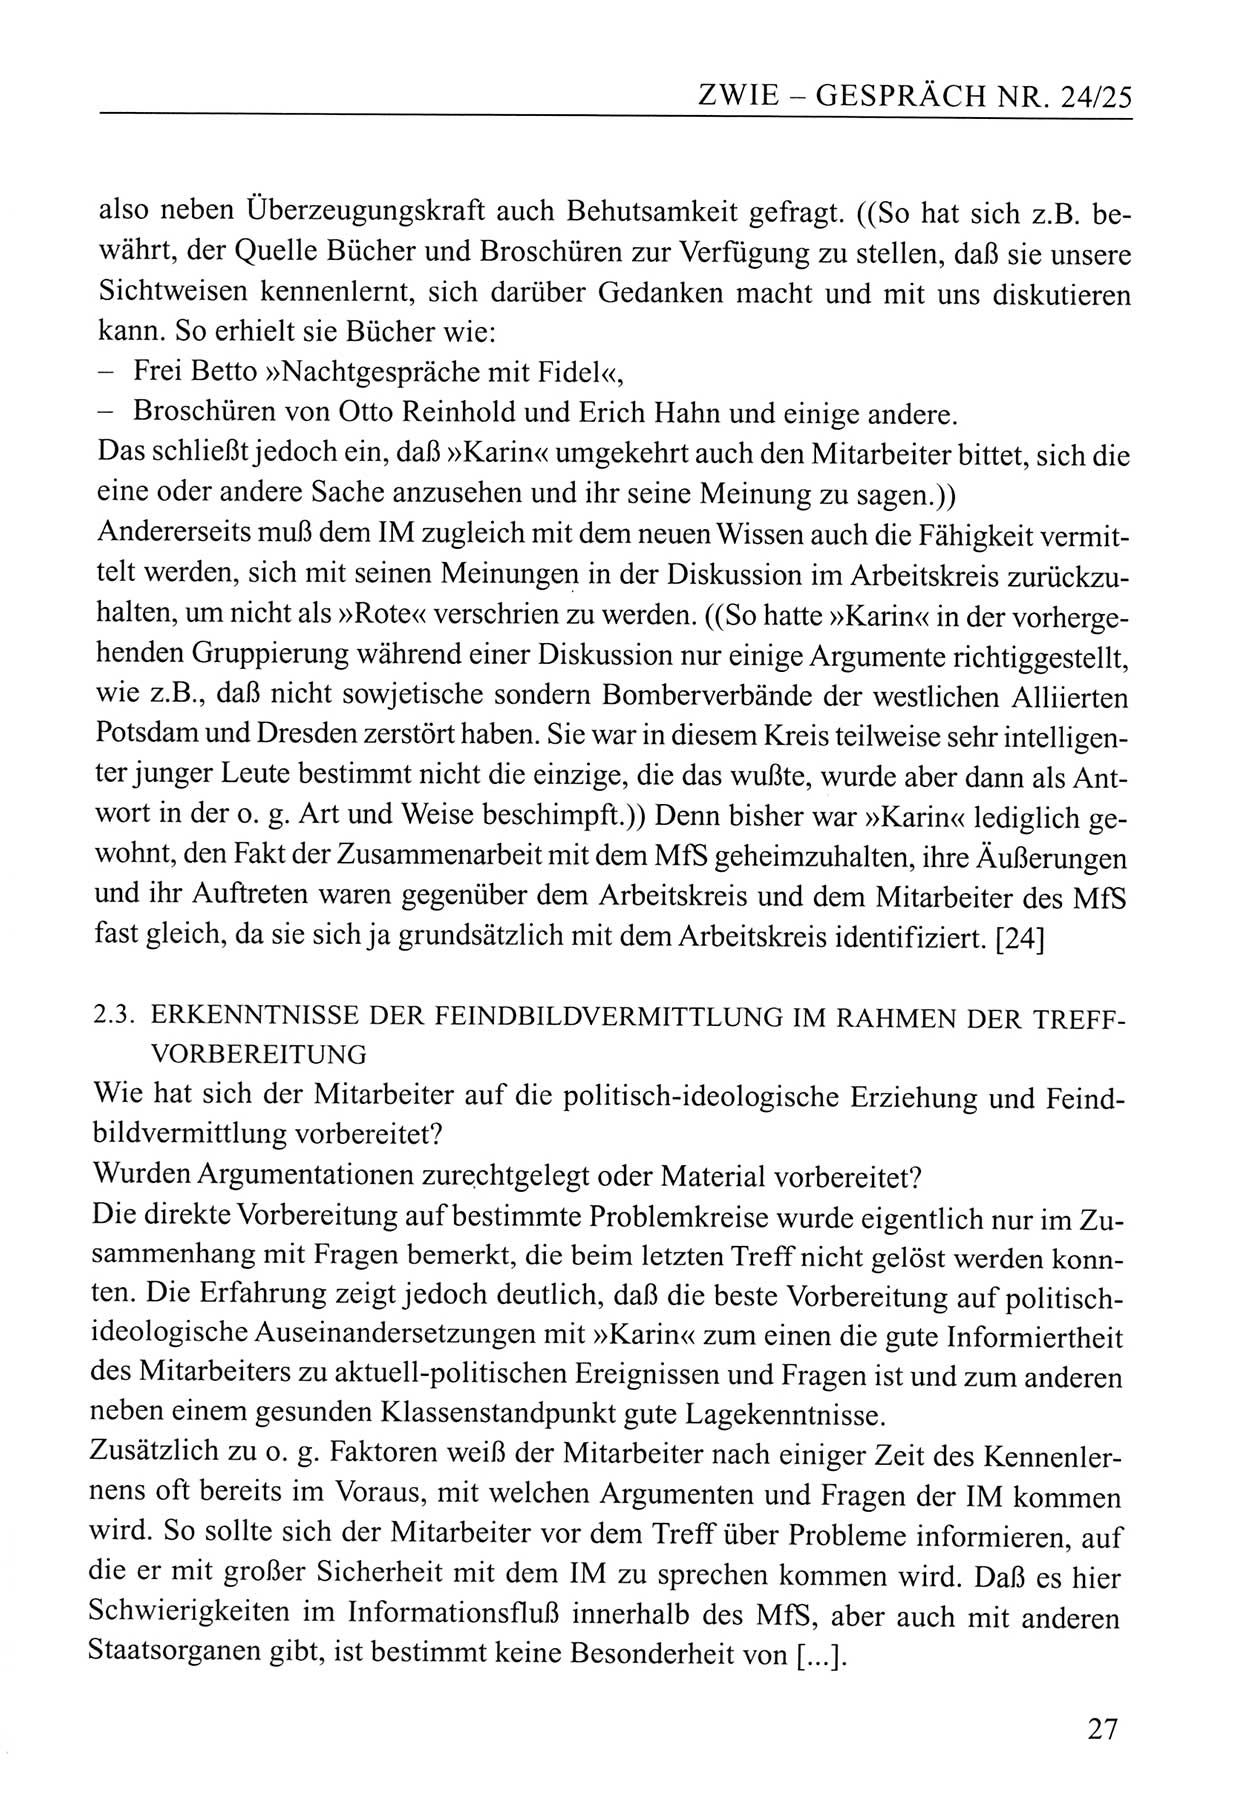 Zwie-Gespräch, Beiträge zum Umgang mit der Staatssicherheits-Vergangenheit [Deutsche Demokratische Republik (DDR)], Ausgabe Nr. 24/25, Berlin 1994, Seite 27 (Zwie-Gespr. Ausg. 24/25 1994, S. 27)